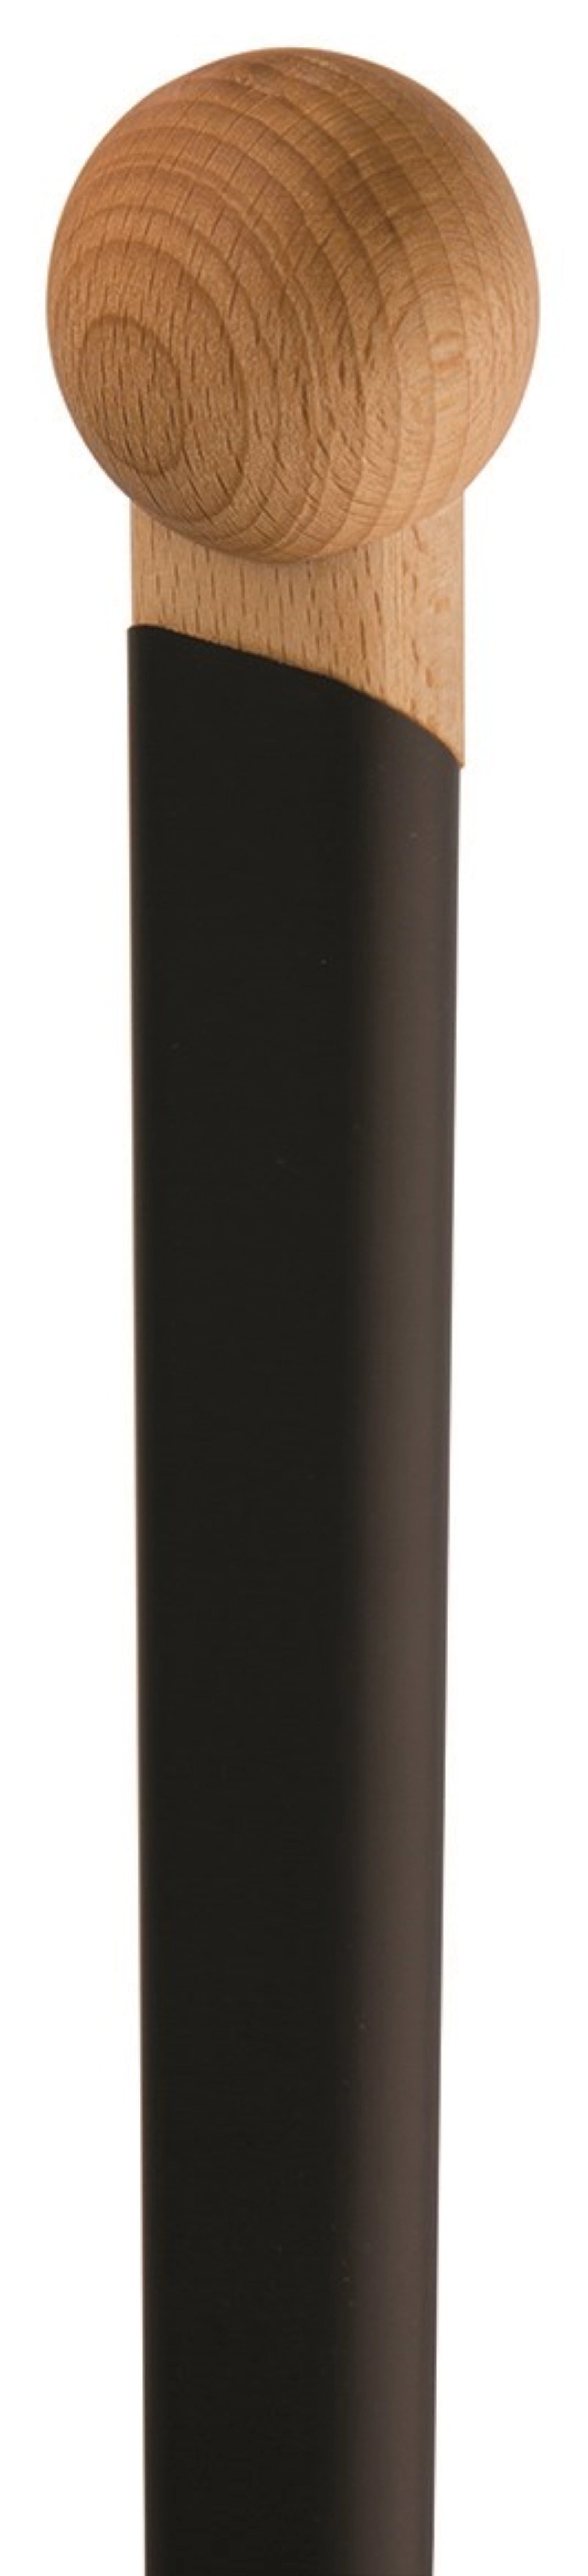 Pizzaschieber 36x36cm mit schwarzem Griff Länge total 190cm - KAQTU Design